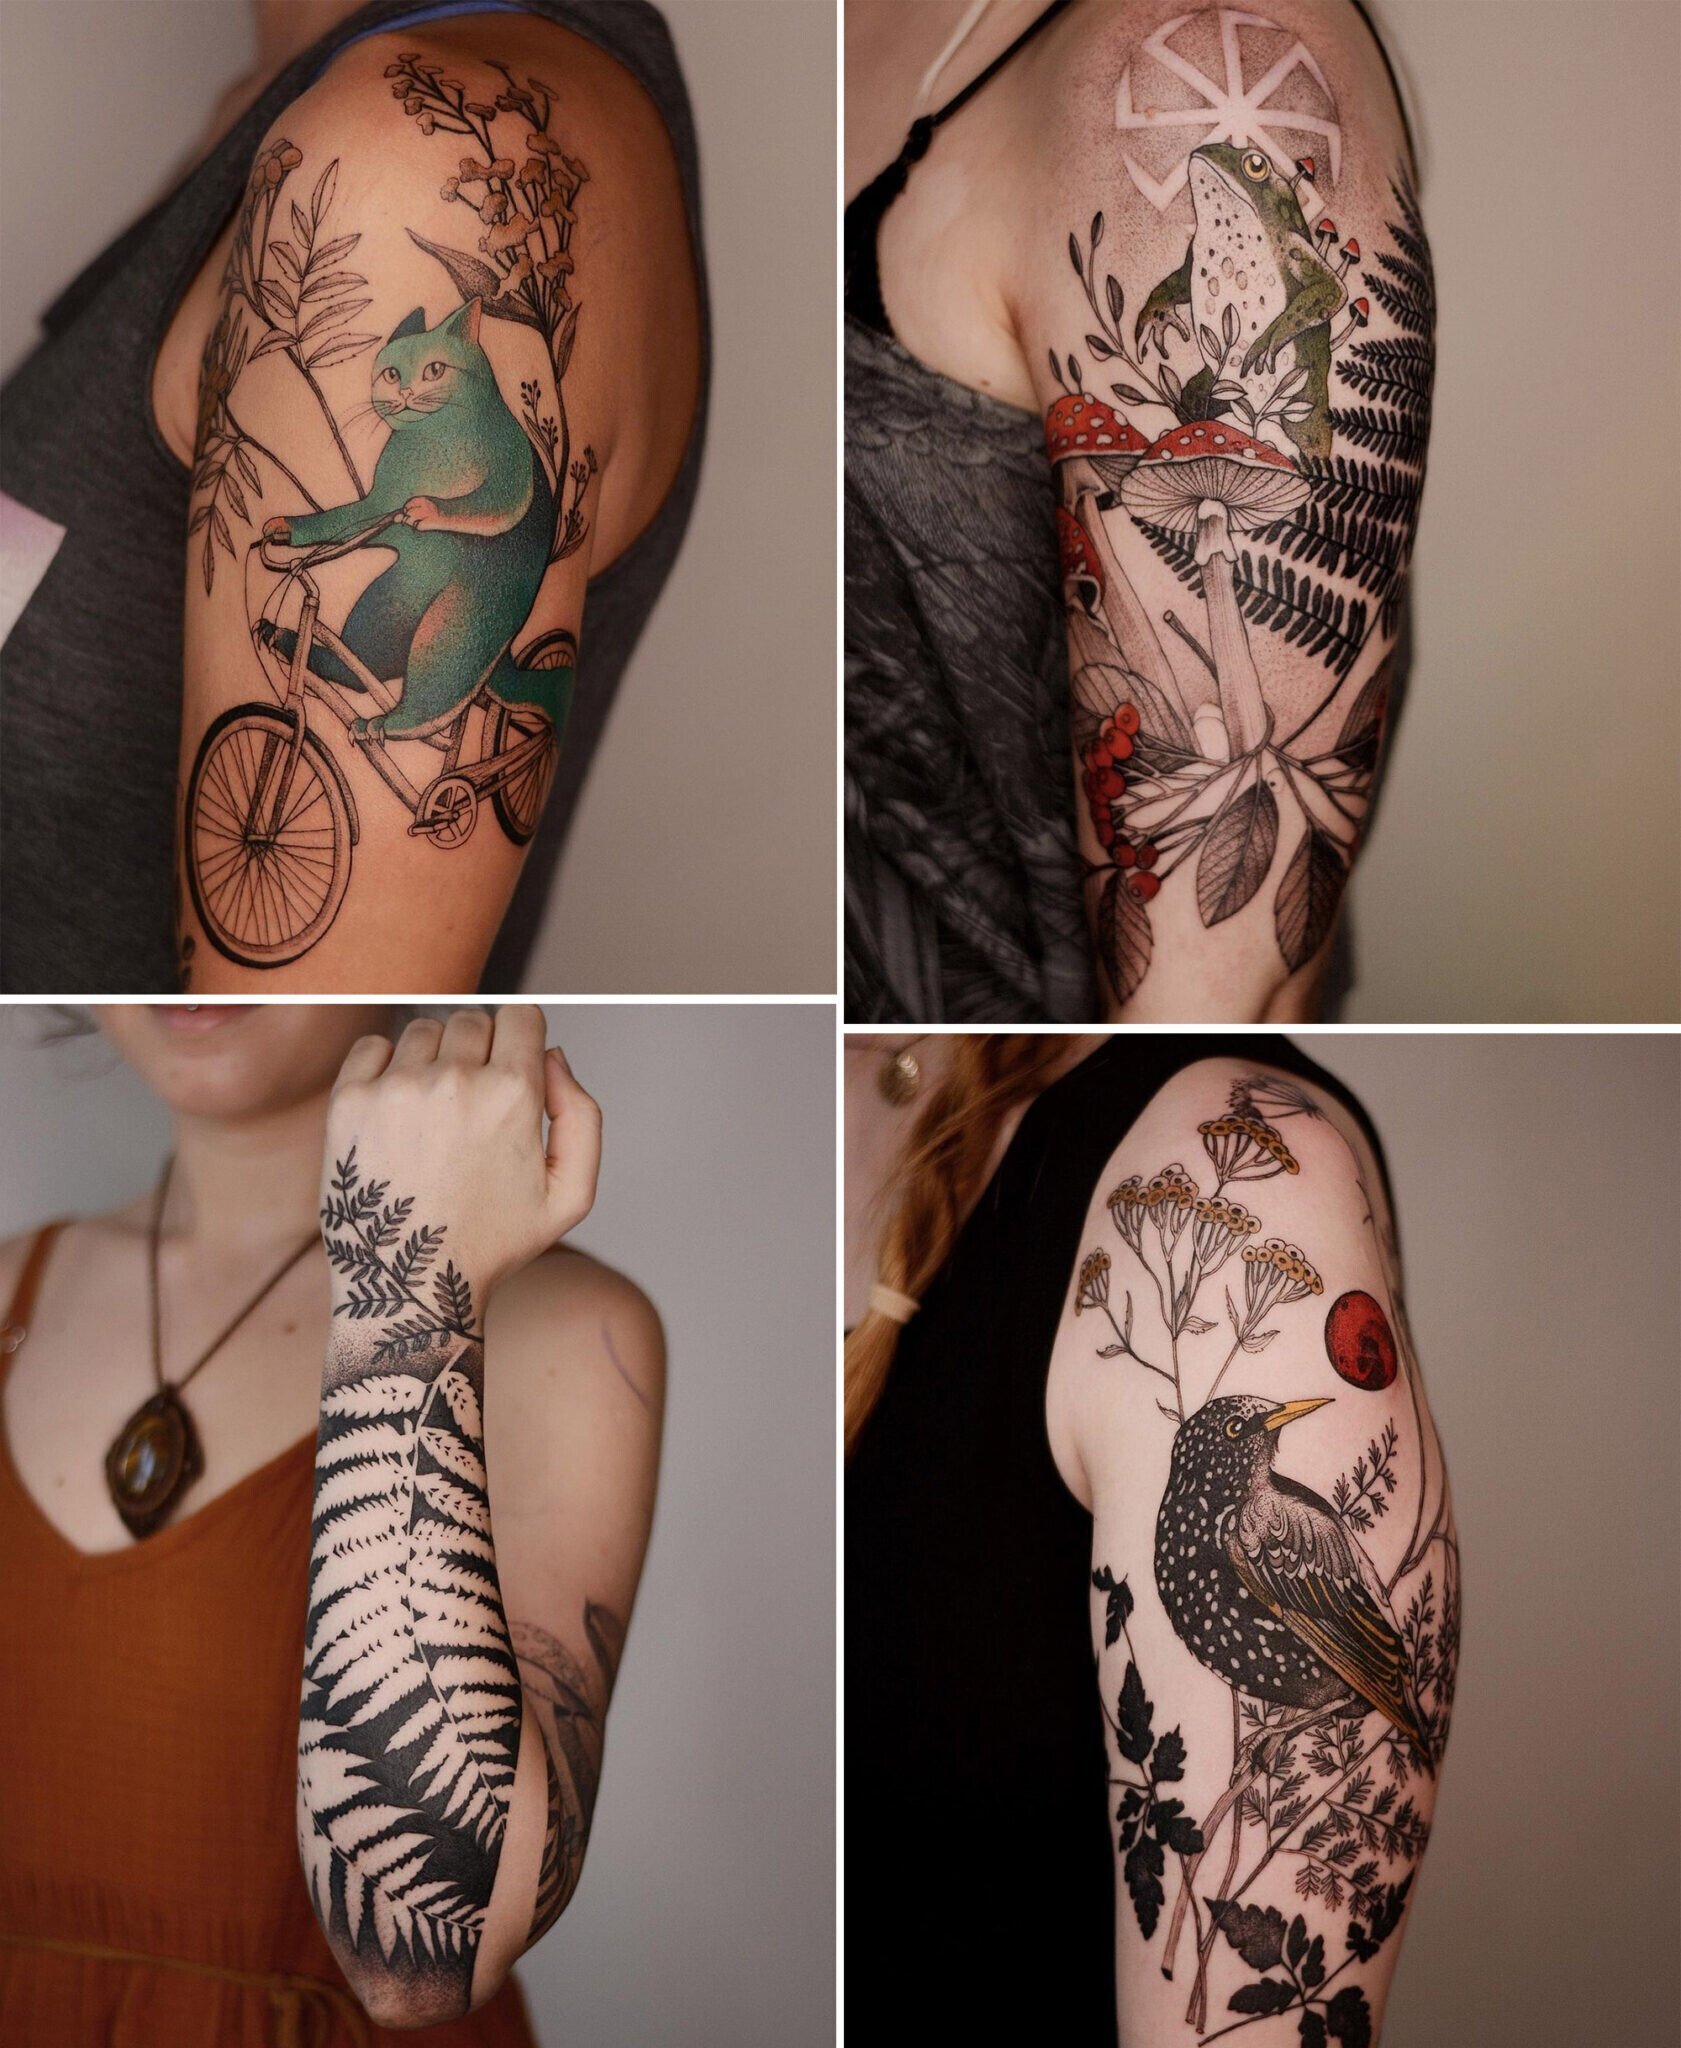 joanna swirska dzo lama tatuajes instagram naturaleza 5